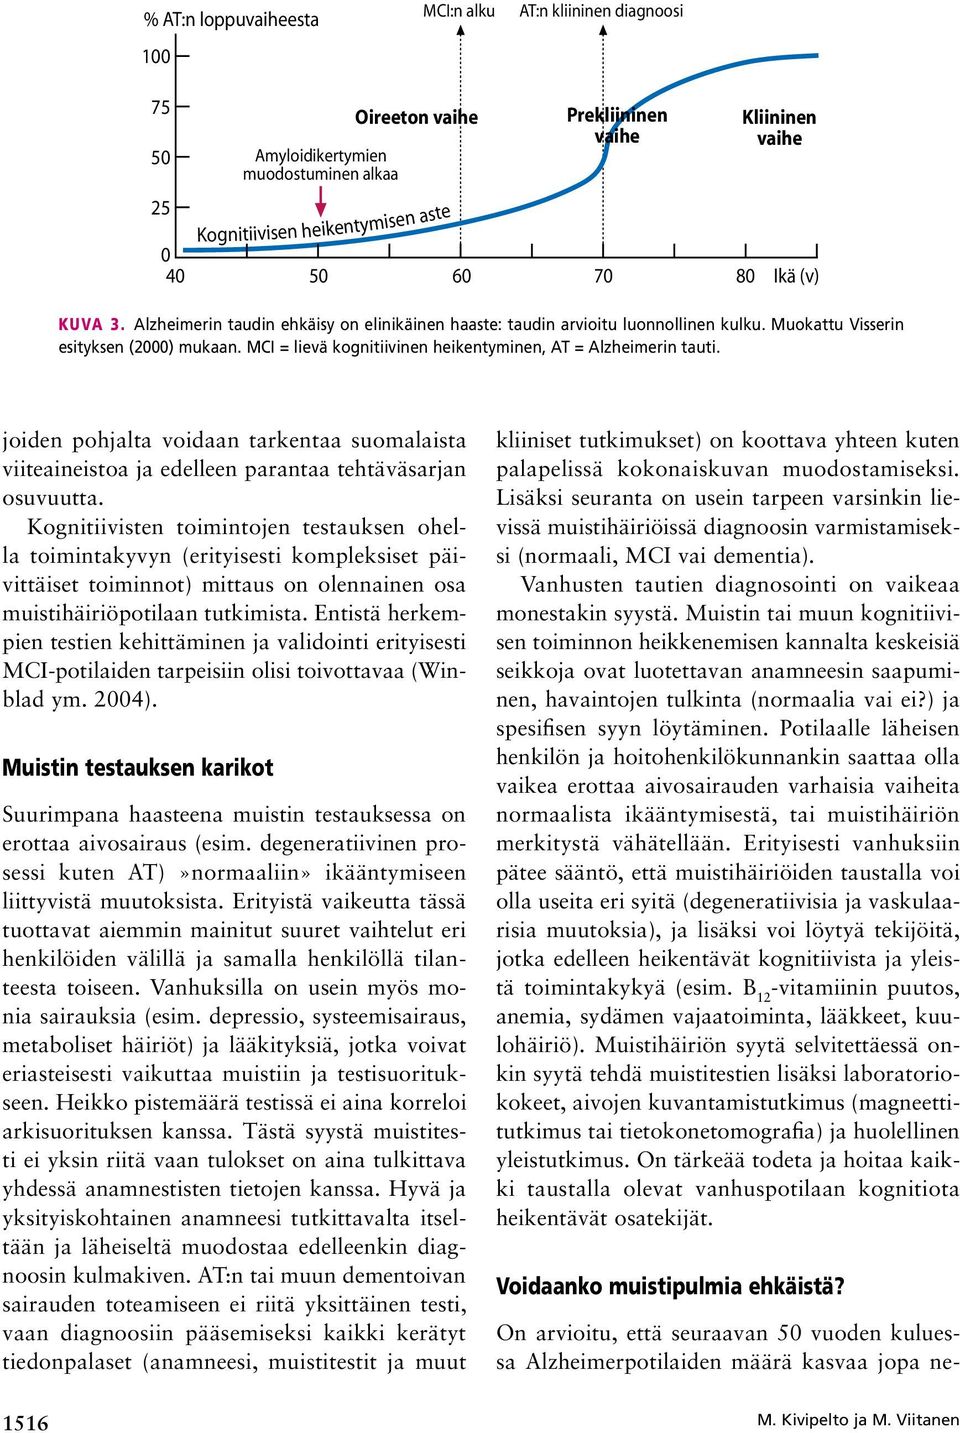 MCI = lievä kognitiivinen heikentyminen, AT = Alzheimerin tauti. joiden pohjalta voidaan tarkentaa suomalaista viiteaineistoa ja edelleen parantaa tehtäväsarjan osuvuutta.